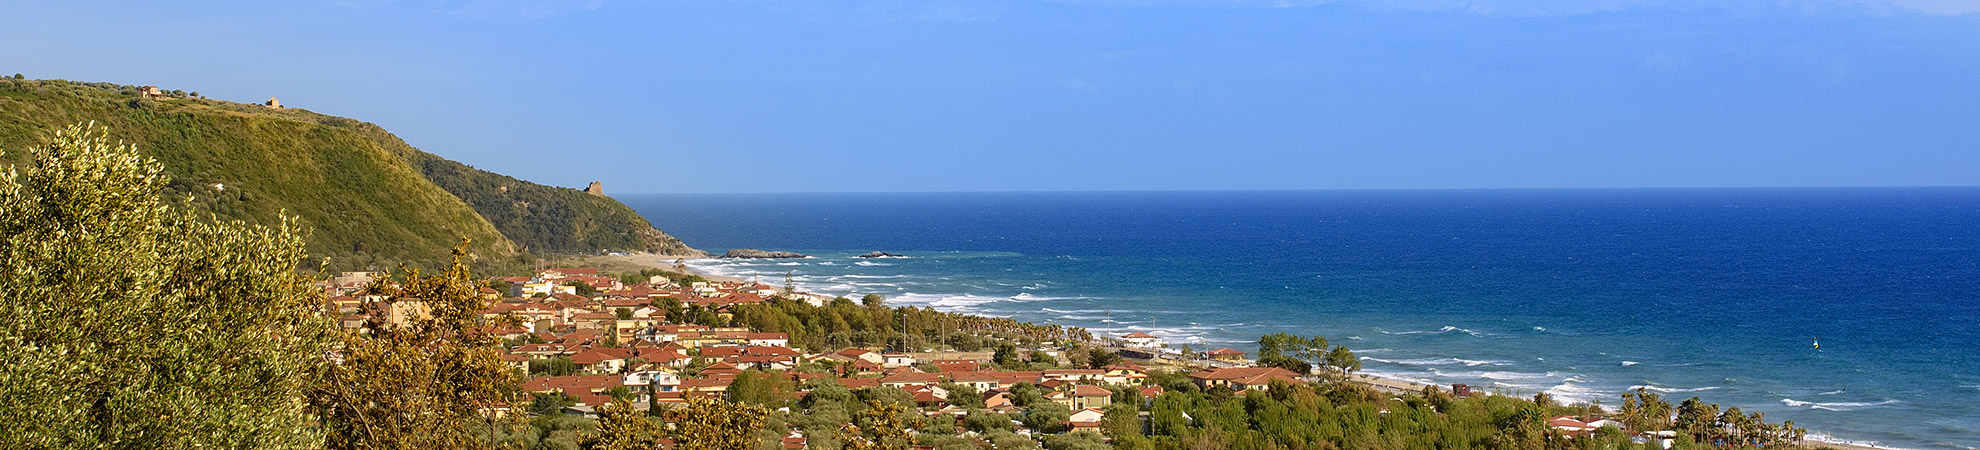 Panoramica di Ascea Marina